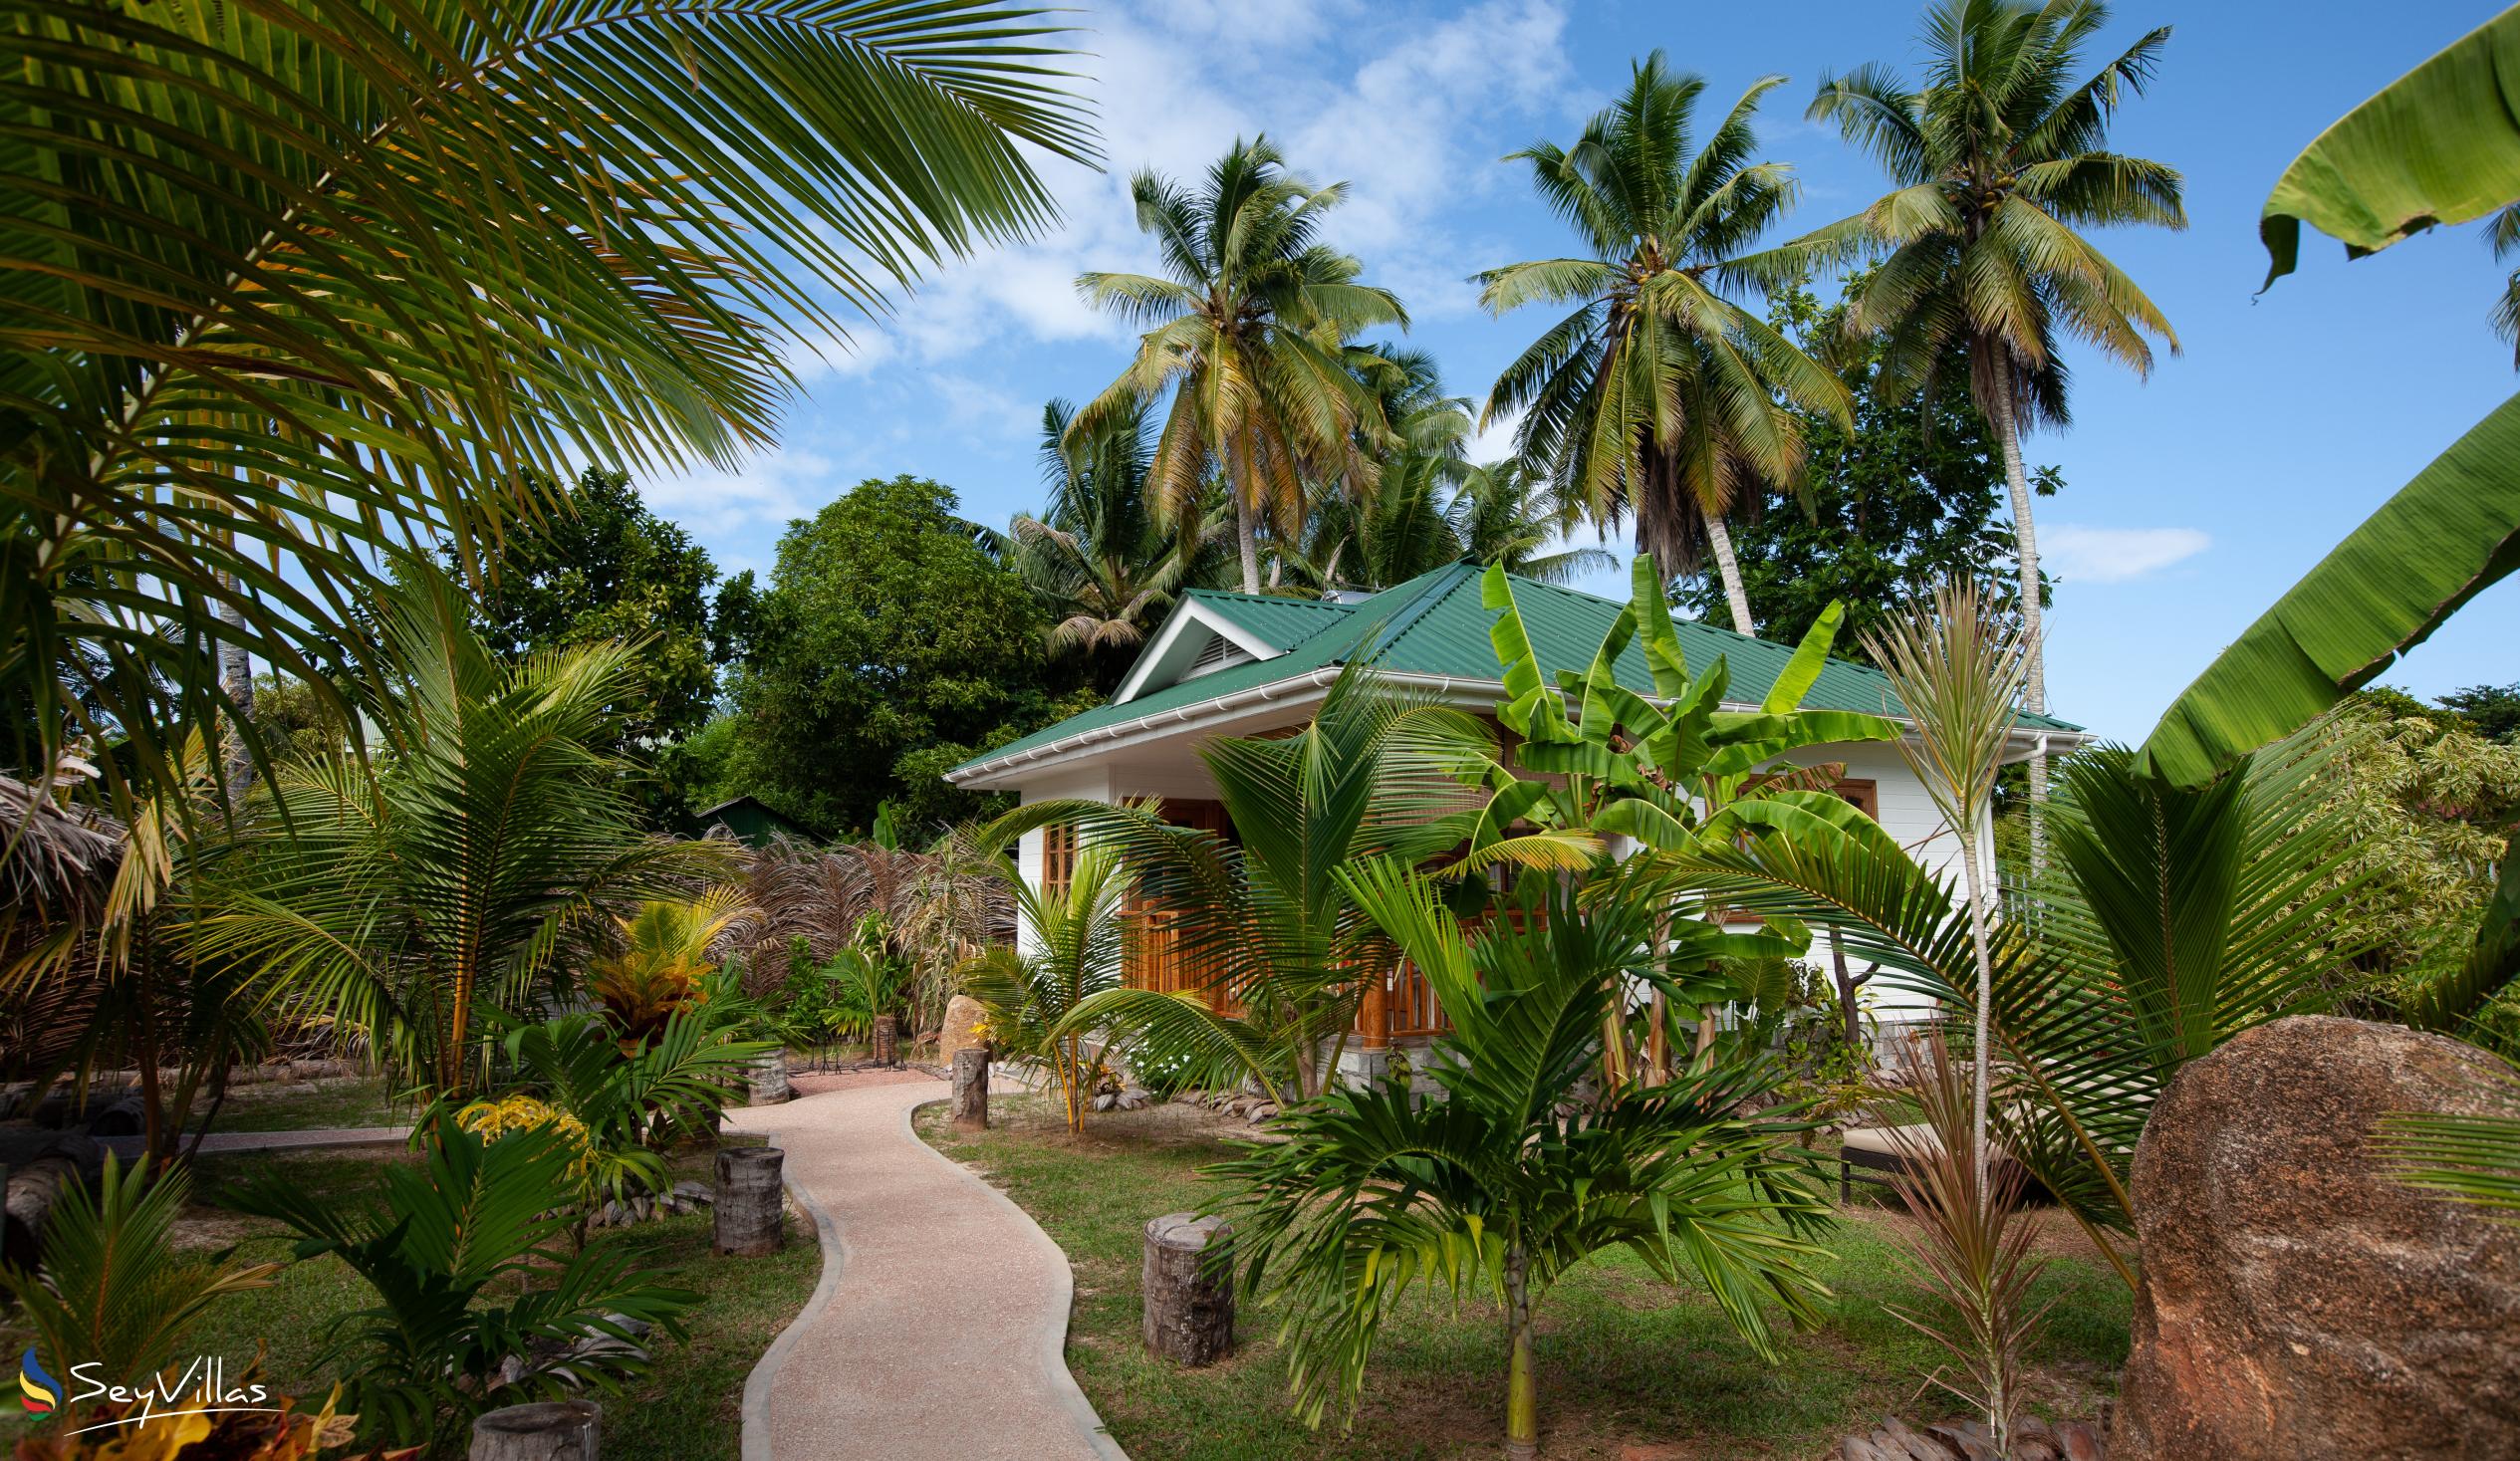 Photo 17: Coco de Mahi - Outdoor area - La Digue (Seychelles)